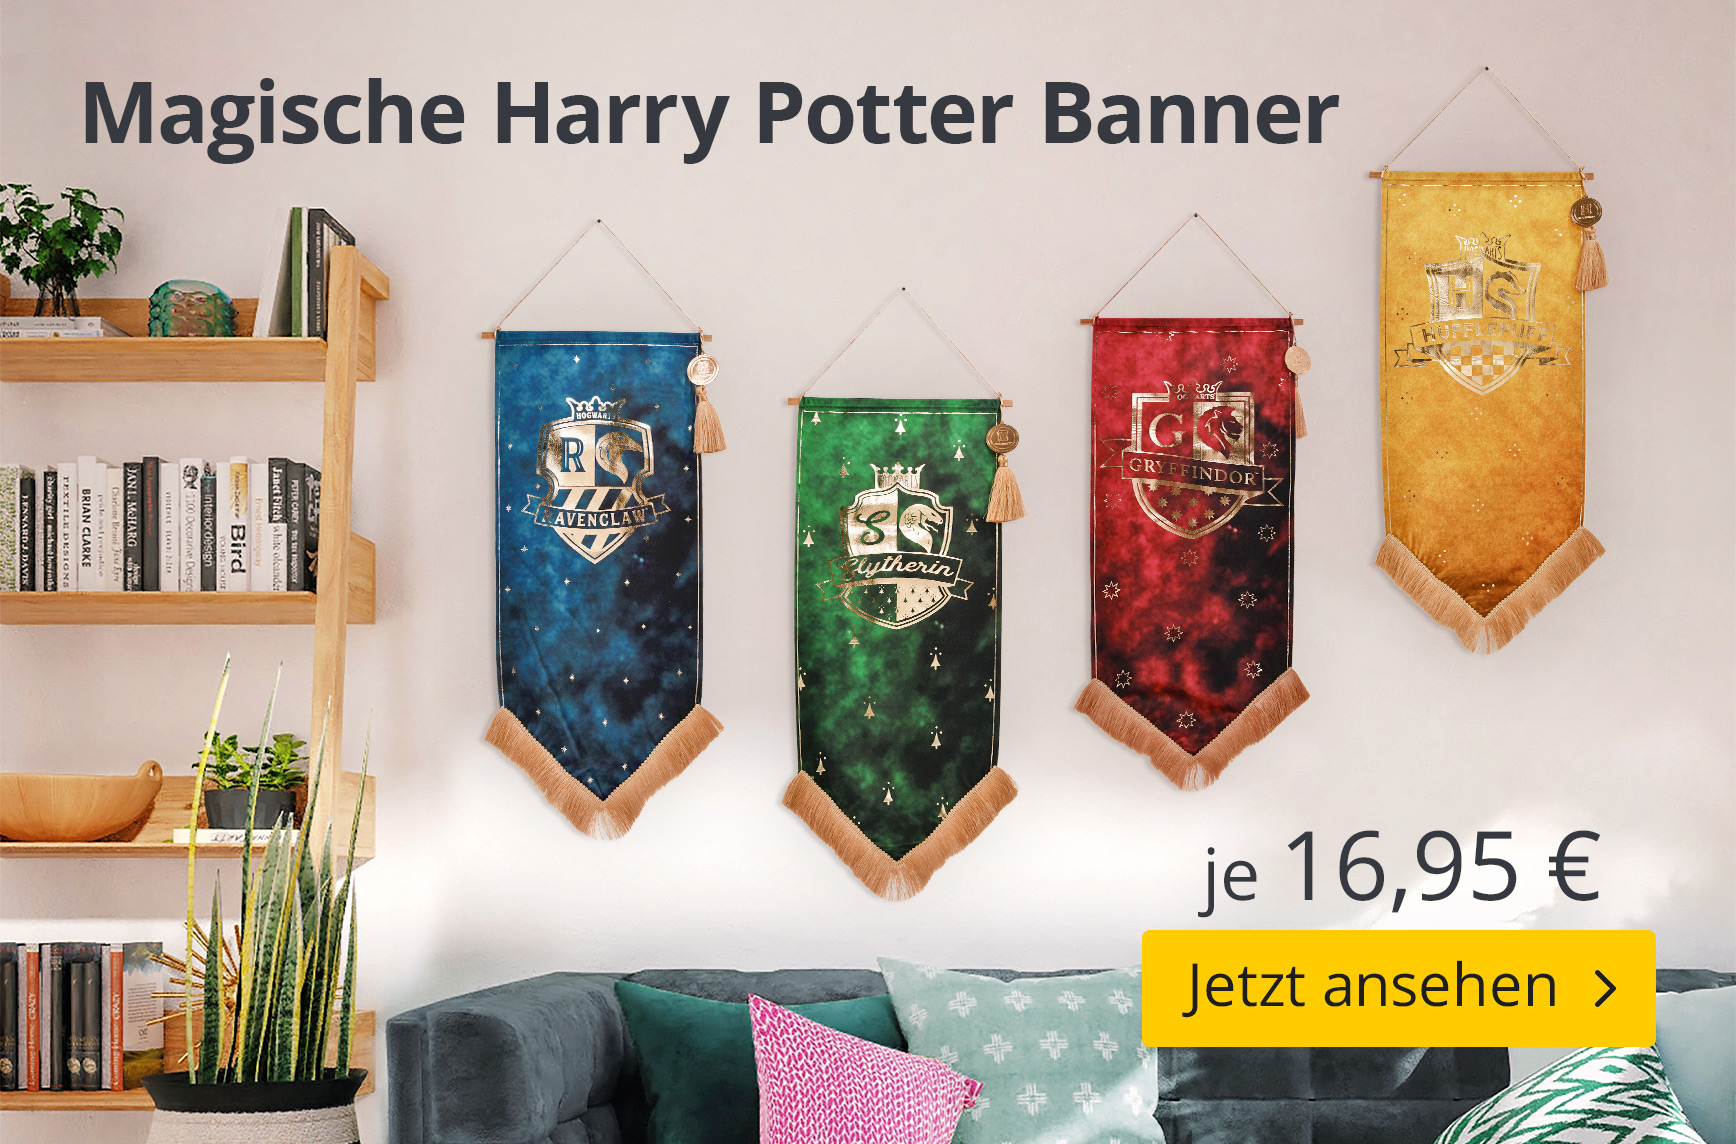 Magische Harry Potter Banner - je 16,95€